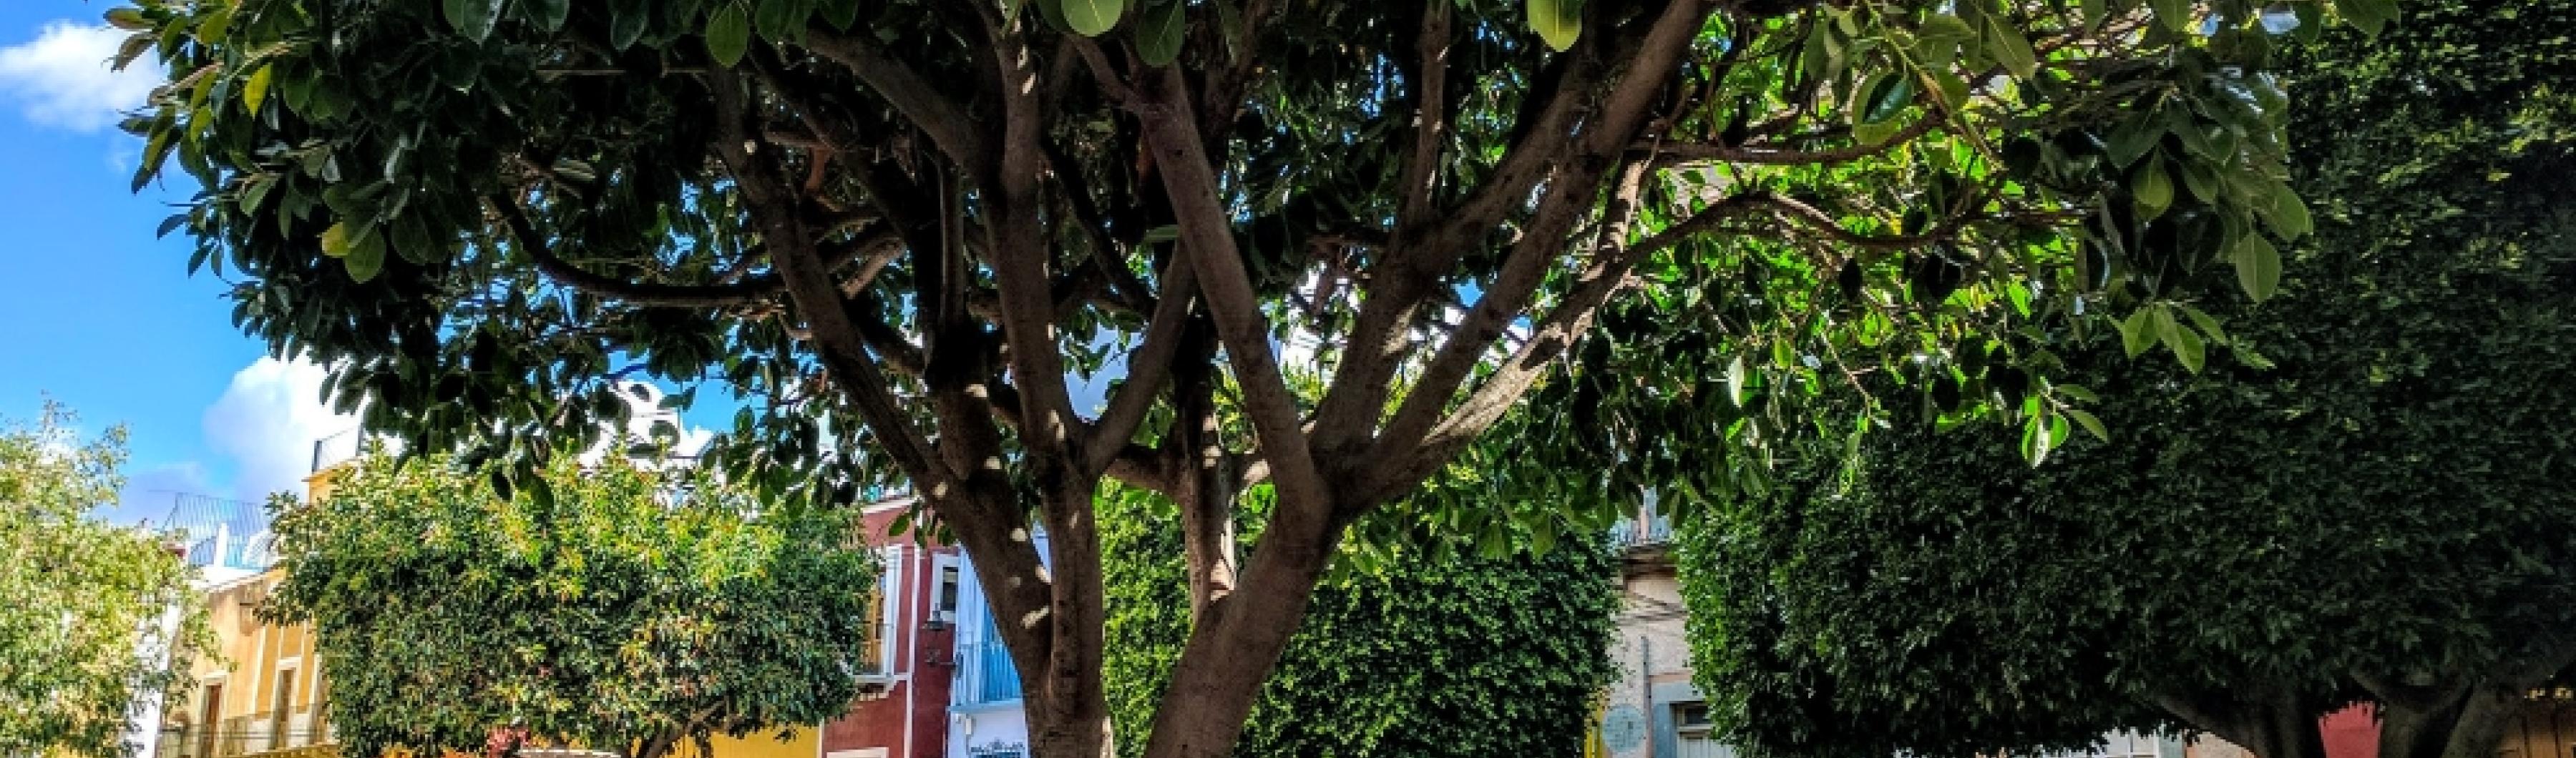 Foto de un árbol en una plaza de la ciudad